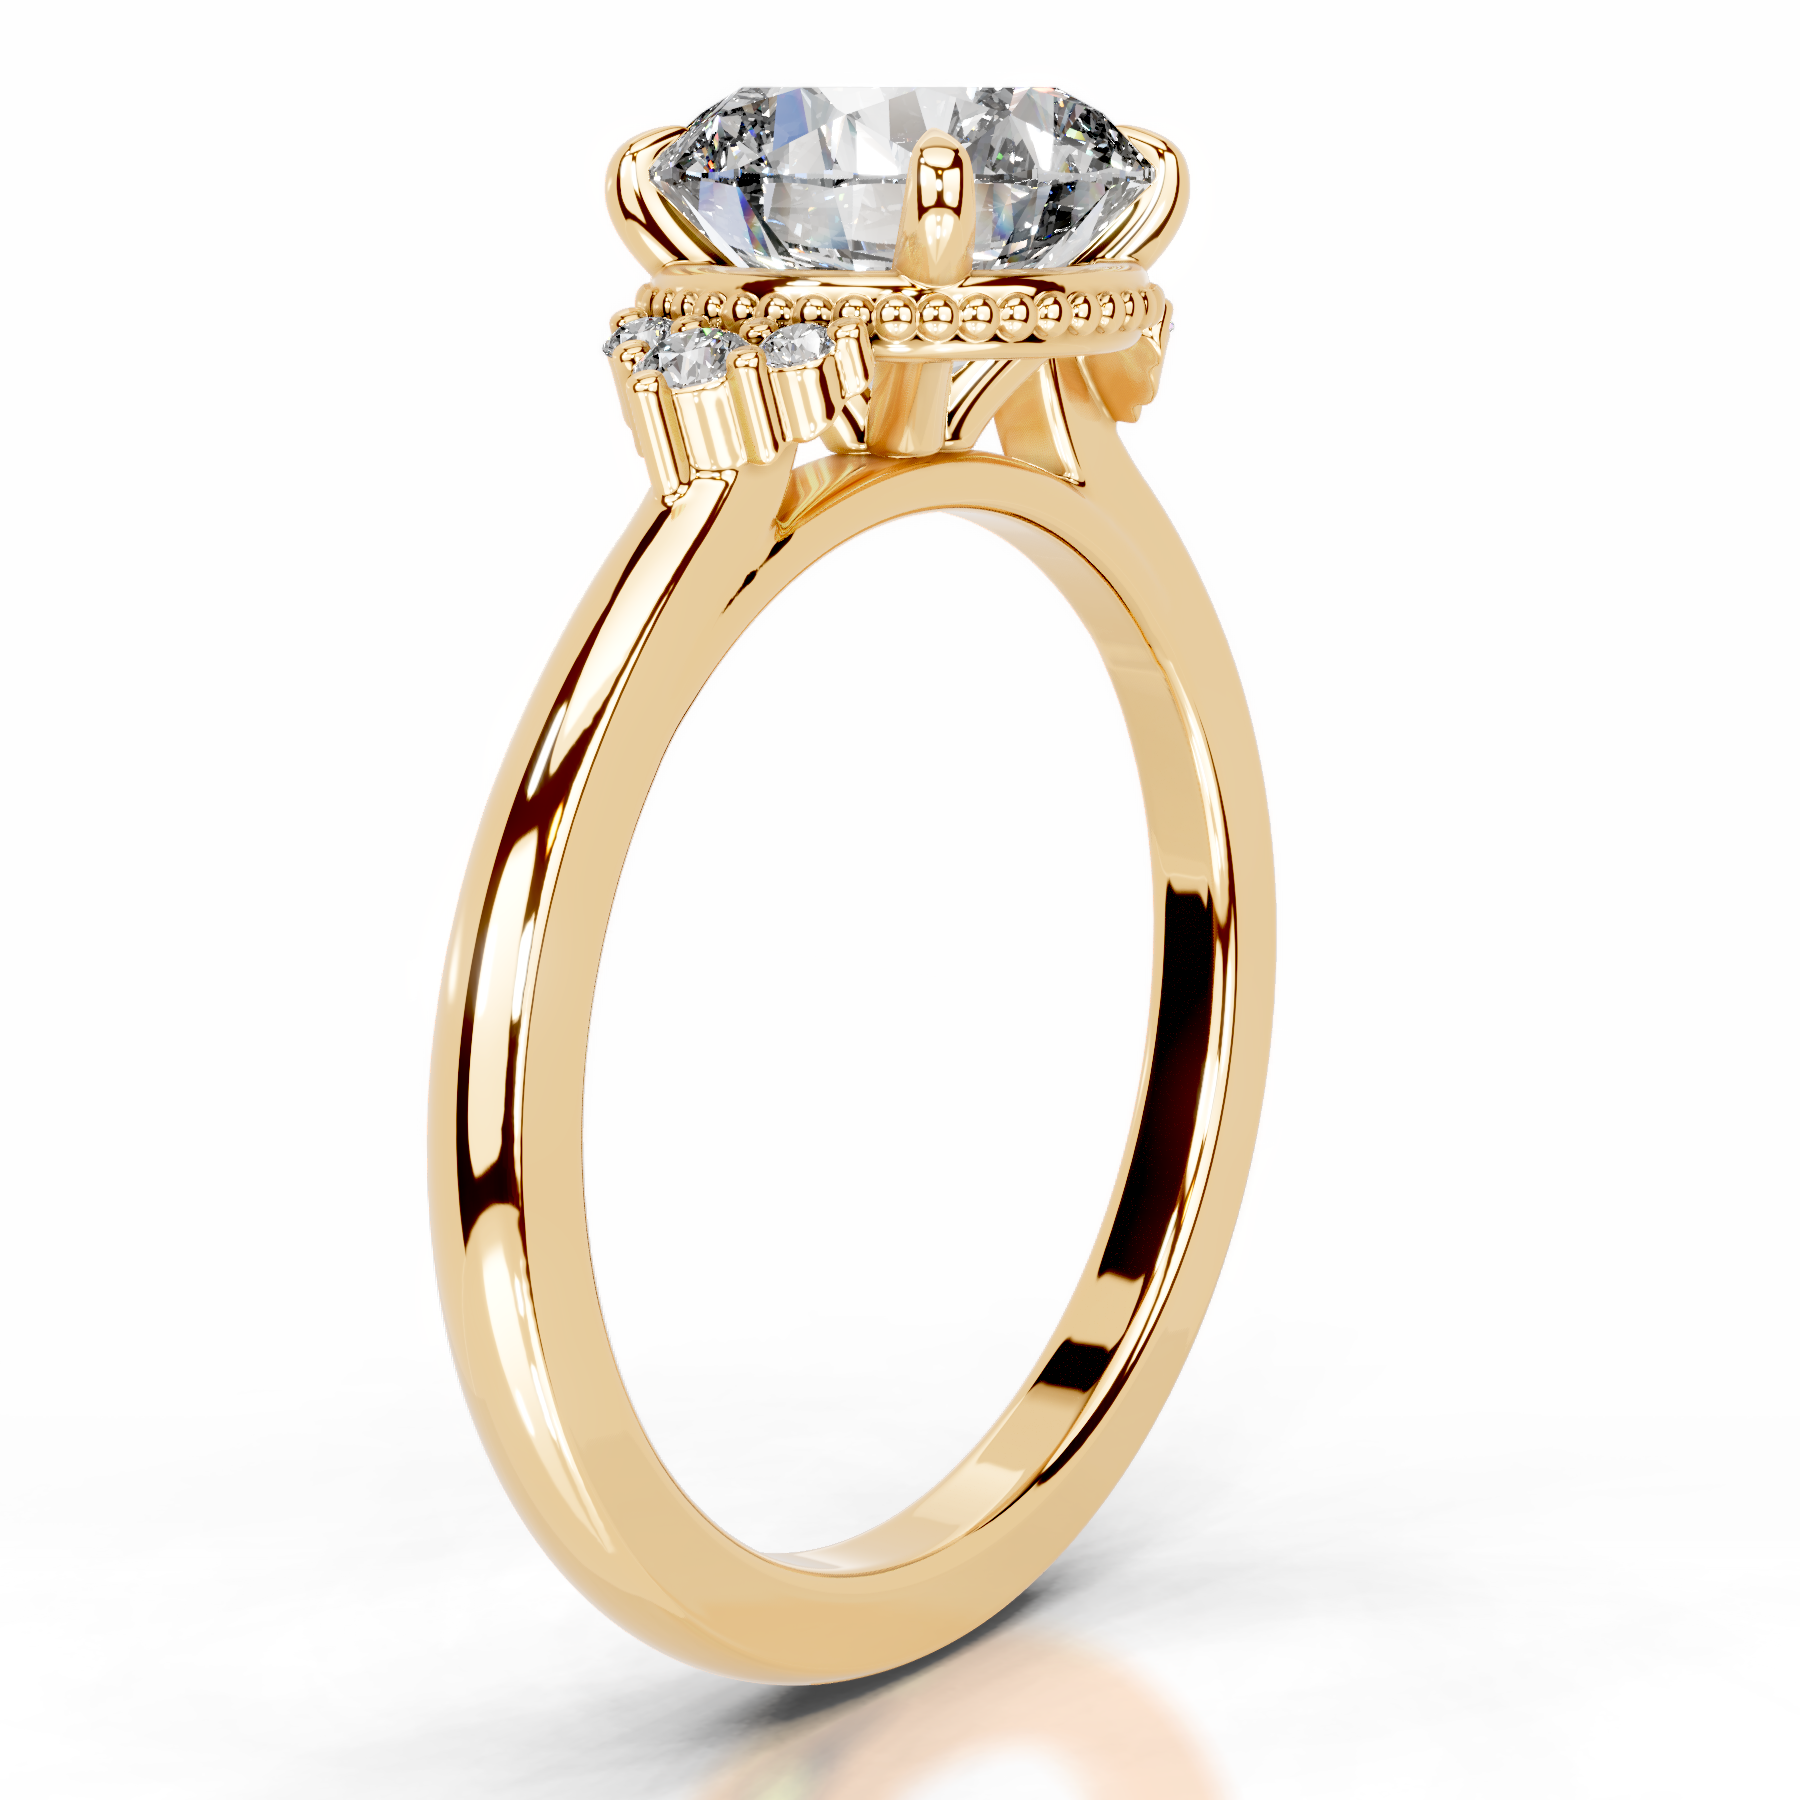 Natasha Lab Grown Diamond Ring   (2.10 Carat) -18K Yellow Gold